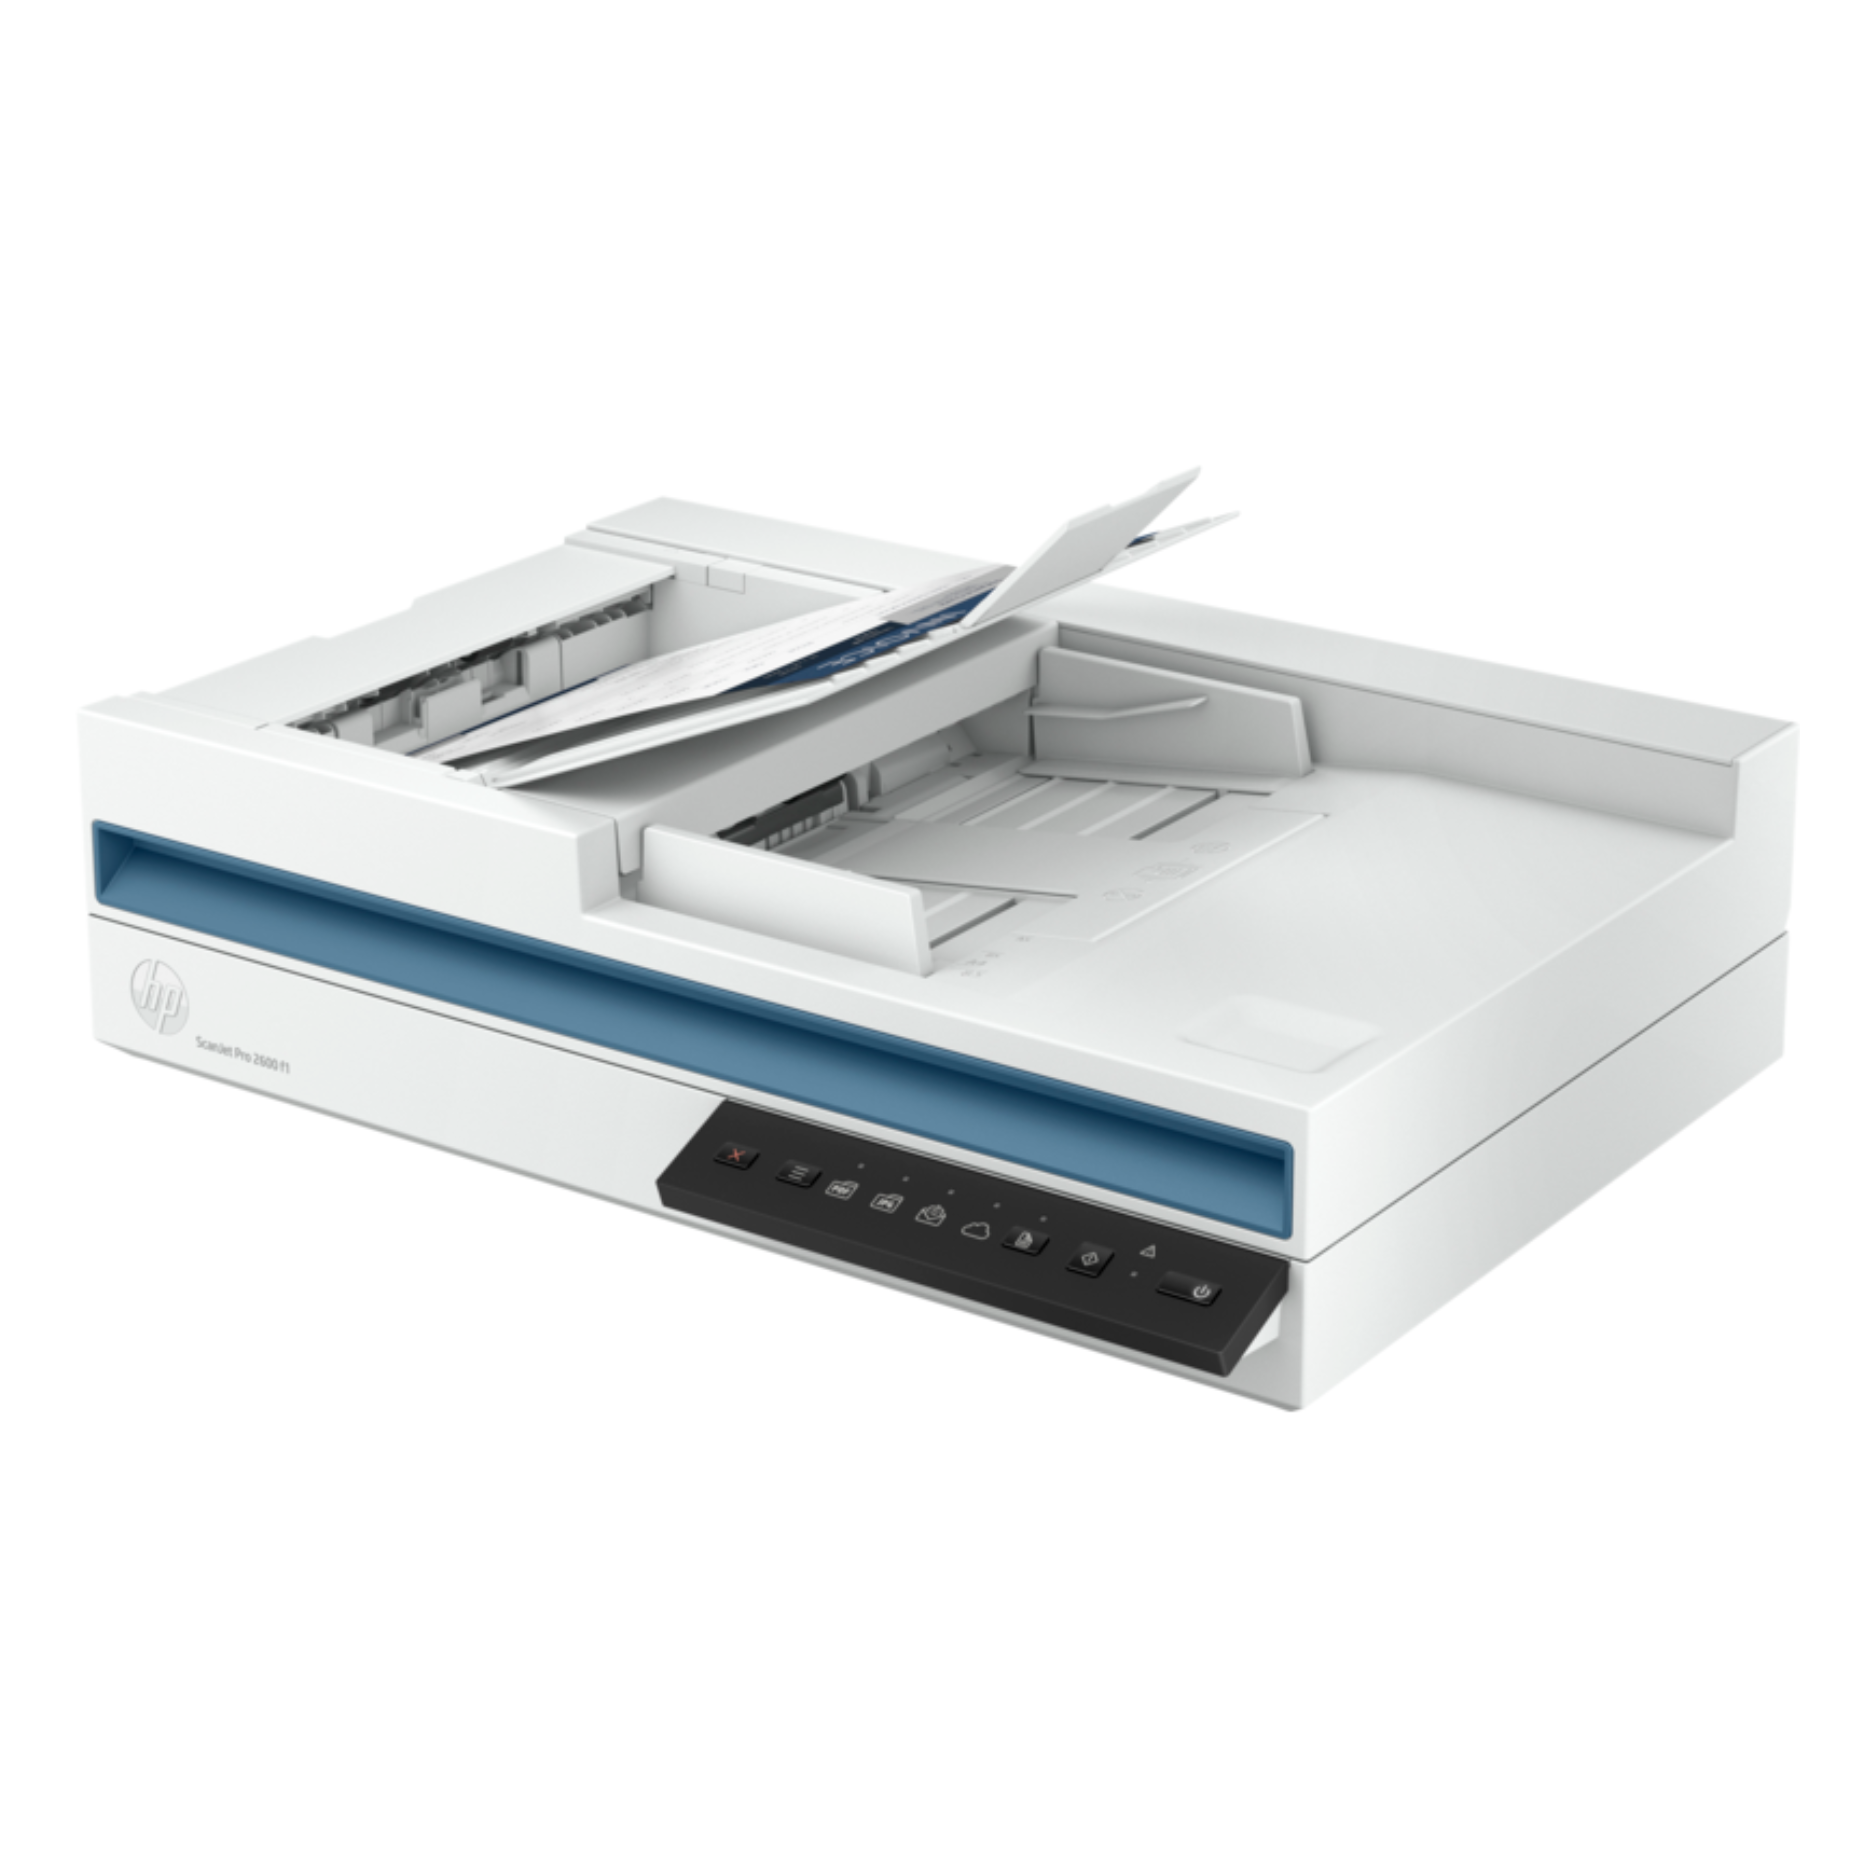 Escaner HP ScanJet Pro 2600 f1 (20G05A)